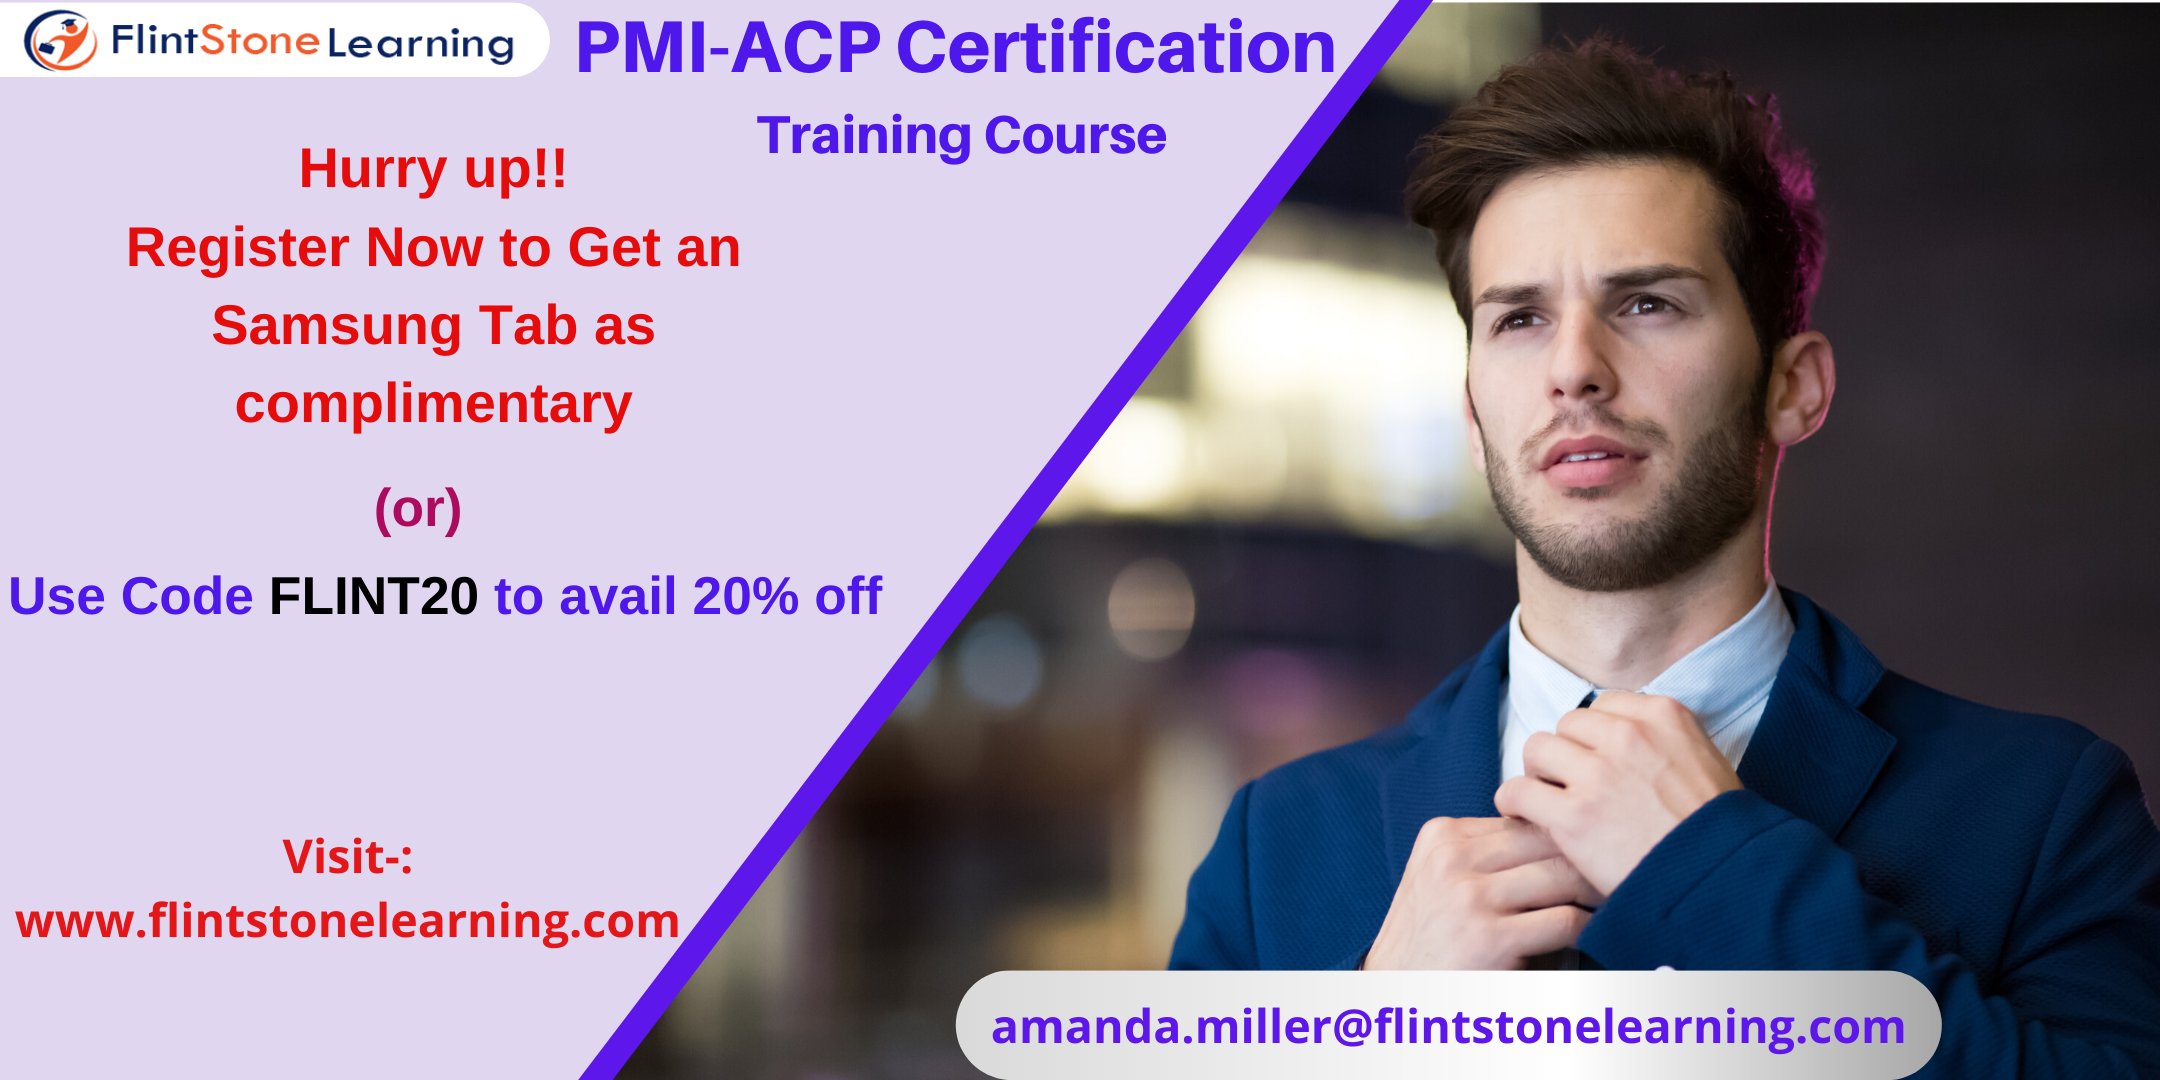 PMI-ACP Certification Training Course in Everett, WA